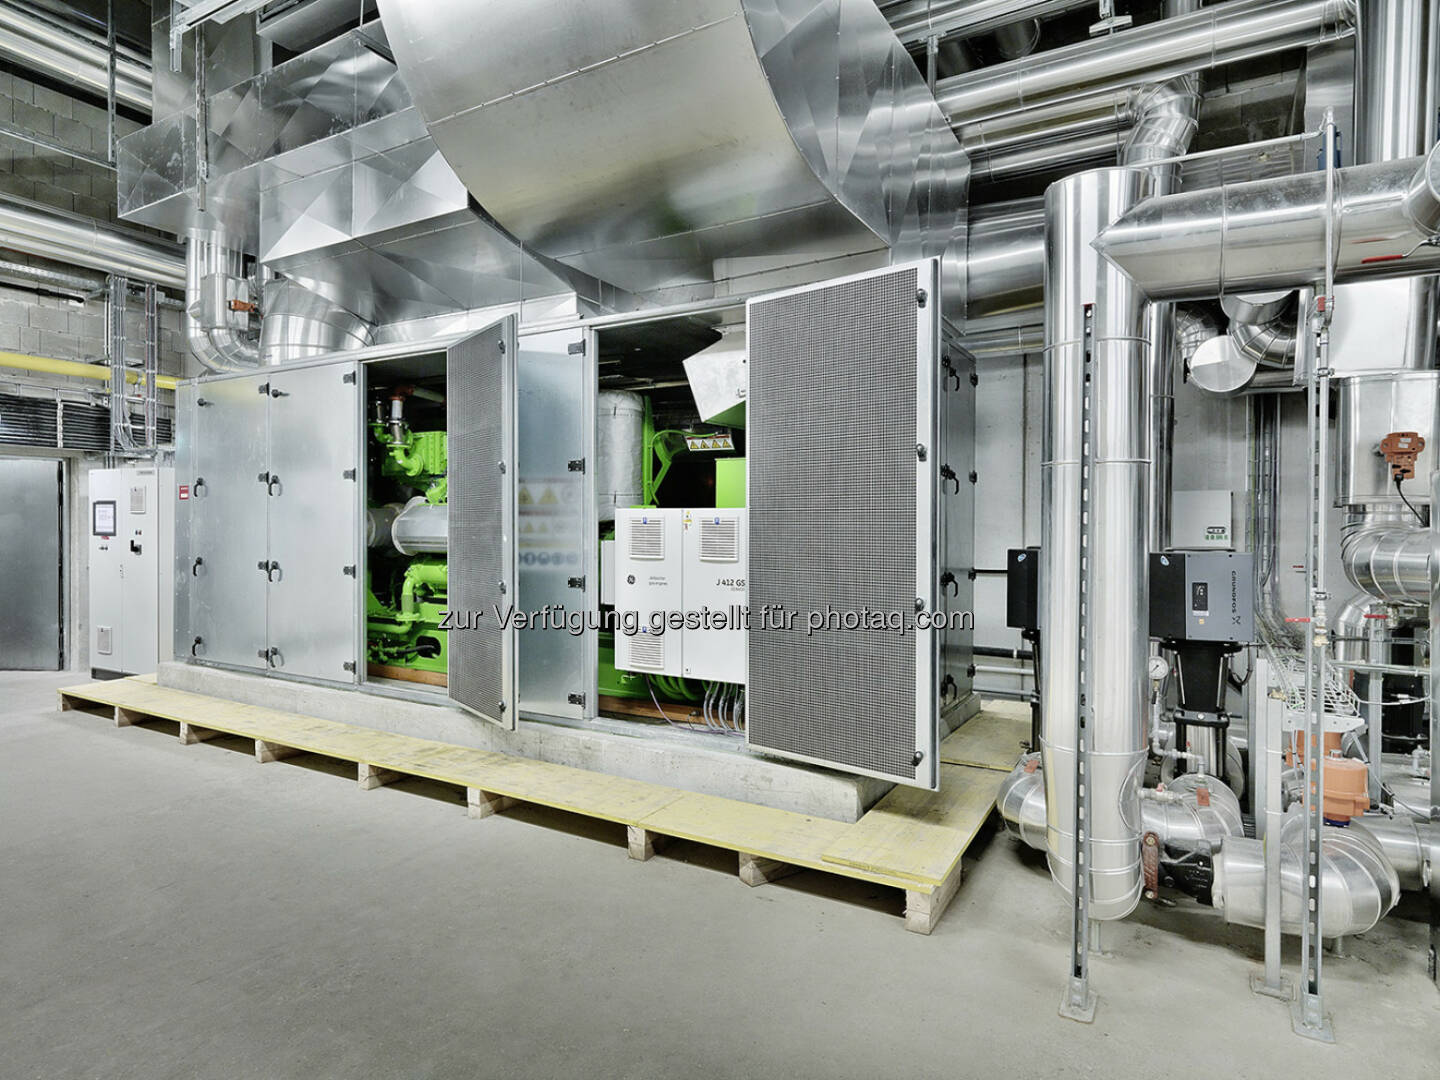 Mpreis setzt auf Gasmotorentechnologie von GE Jenbacher, Neues Blockheizkraftwerk versorgt Zentrale der Supermarktkette mit Strom und Wärme (Bild: GE Jenbacher)